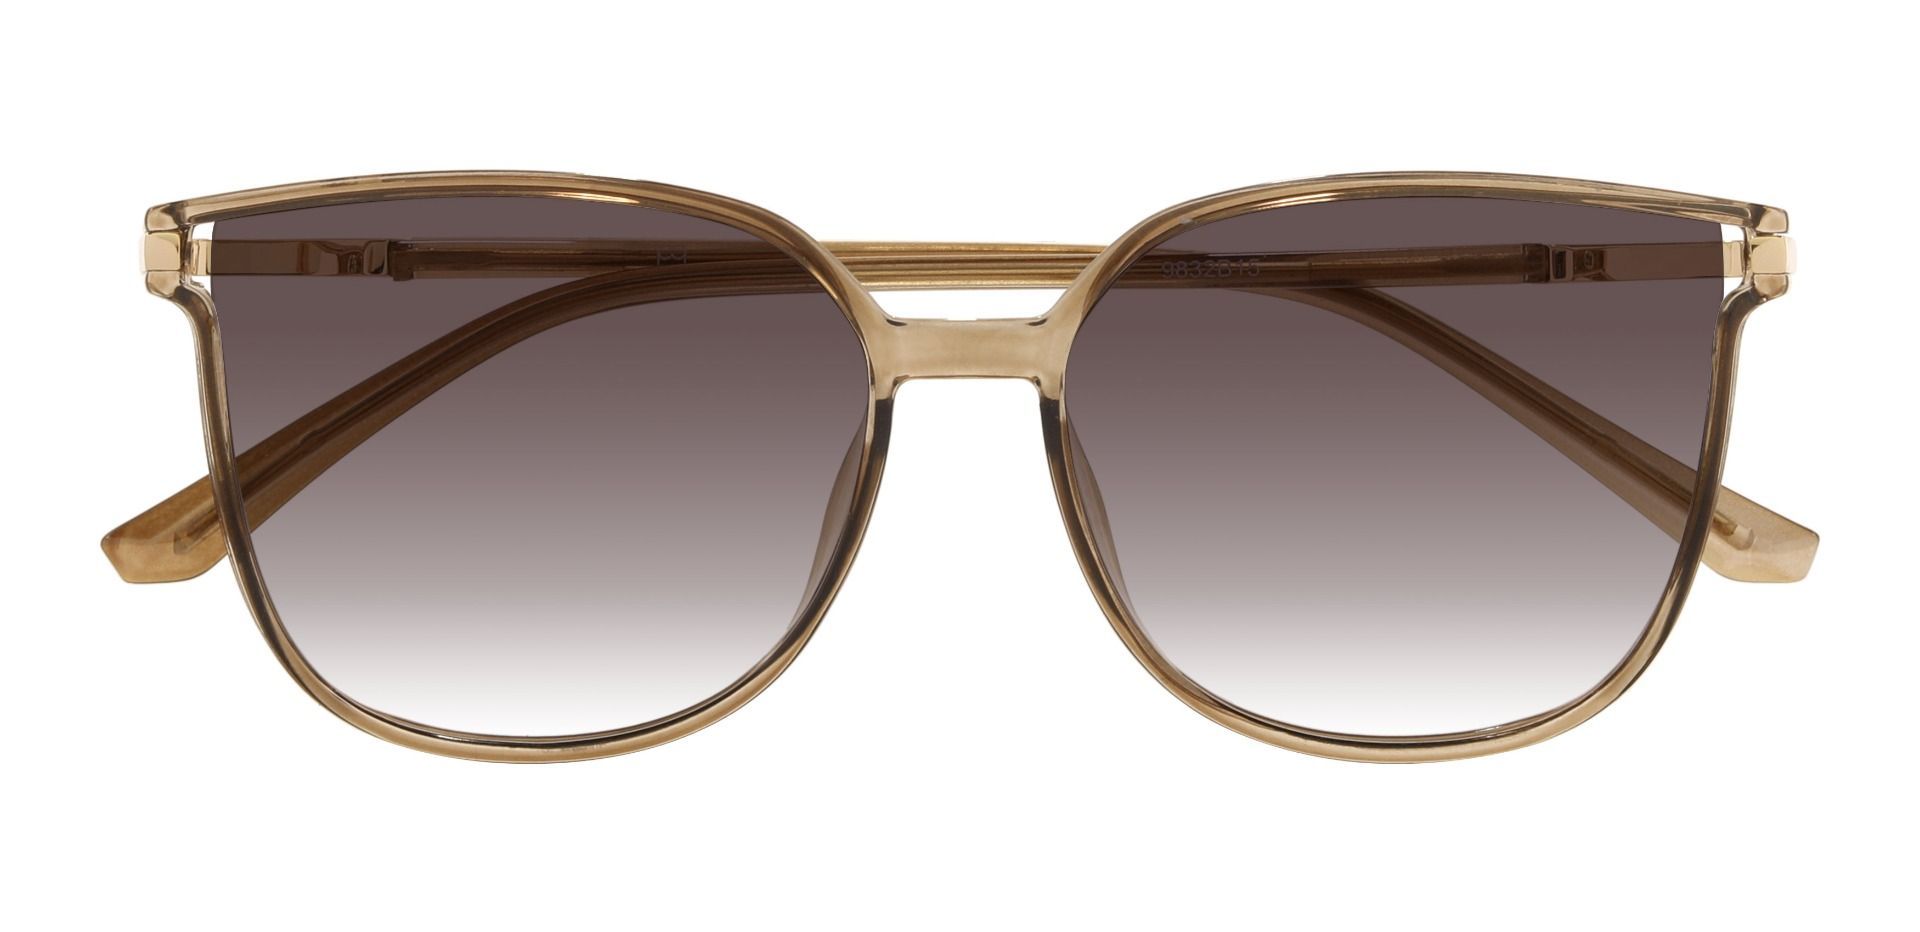 Nicolette Square Brown Prescription Sunglasses | Women's Sunglasses ...